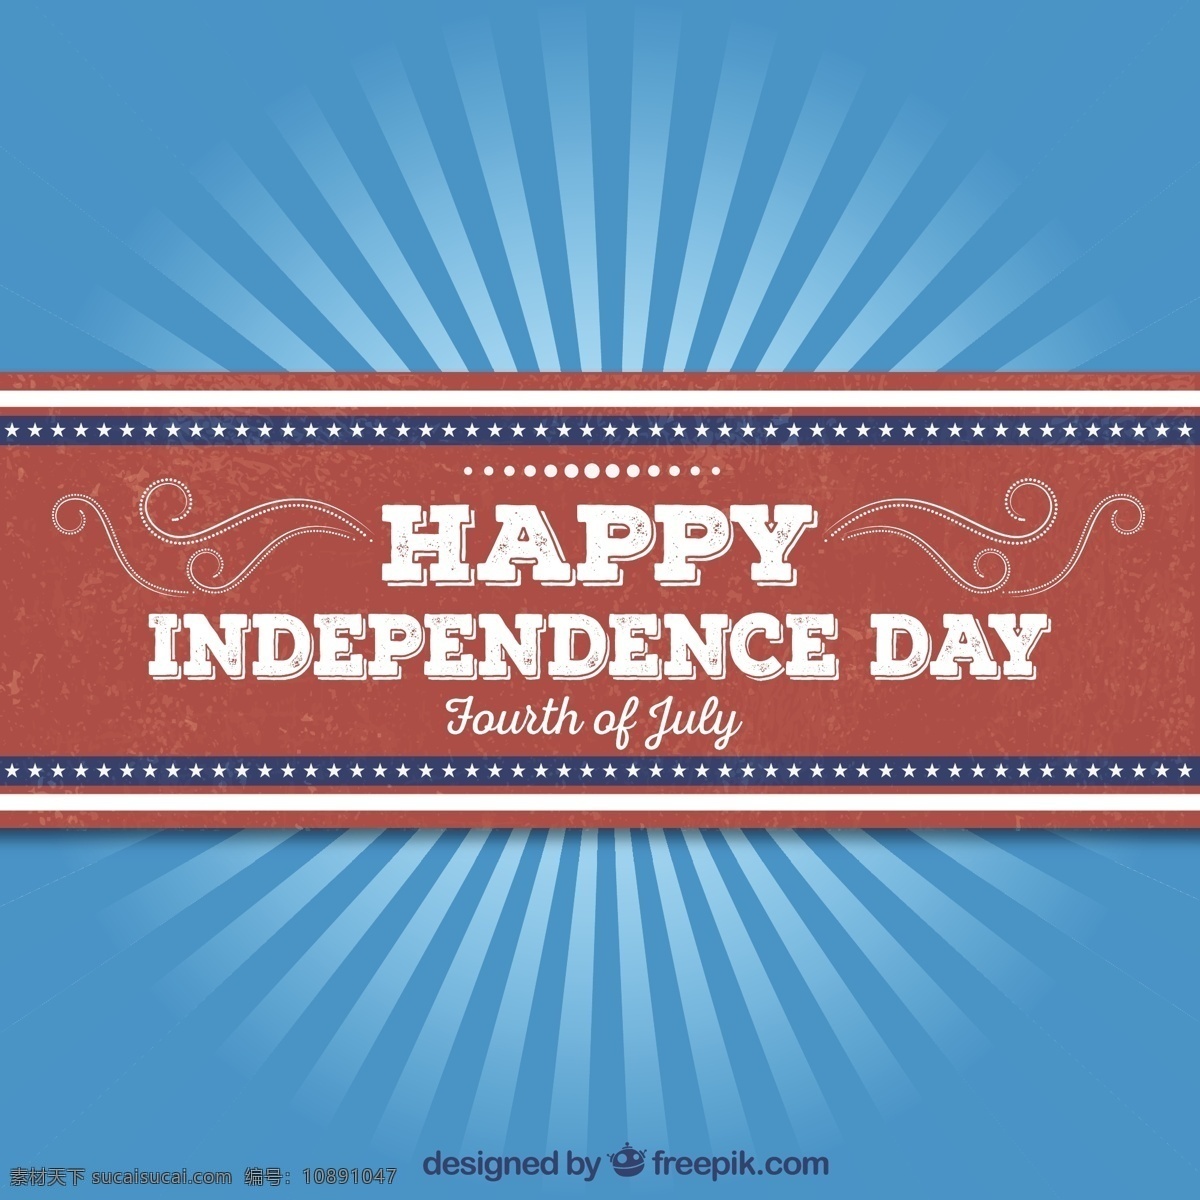 复古独立日卡 复古 卡片 模板 美国 独立日 文化 传统 一天 老式卡 爱国 独立 七月 第四 爱国主义 蓝色